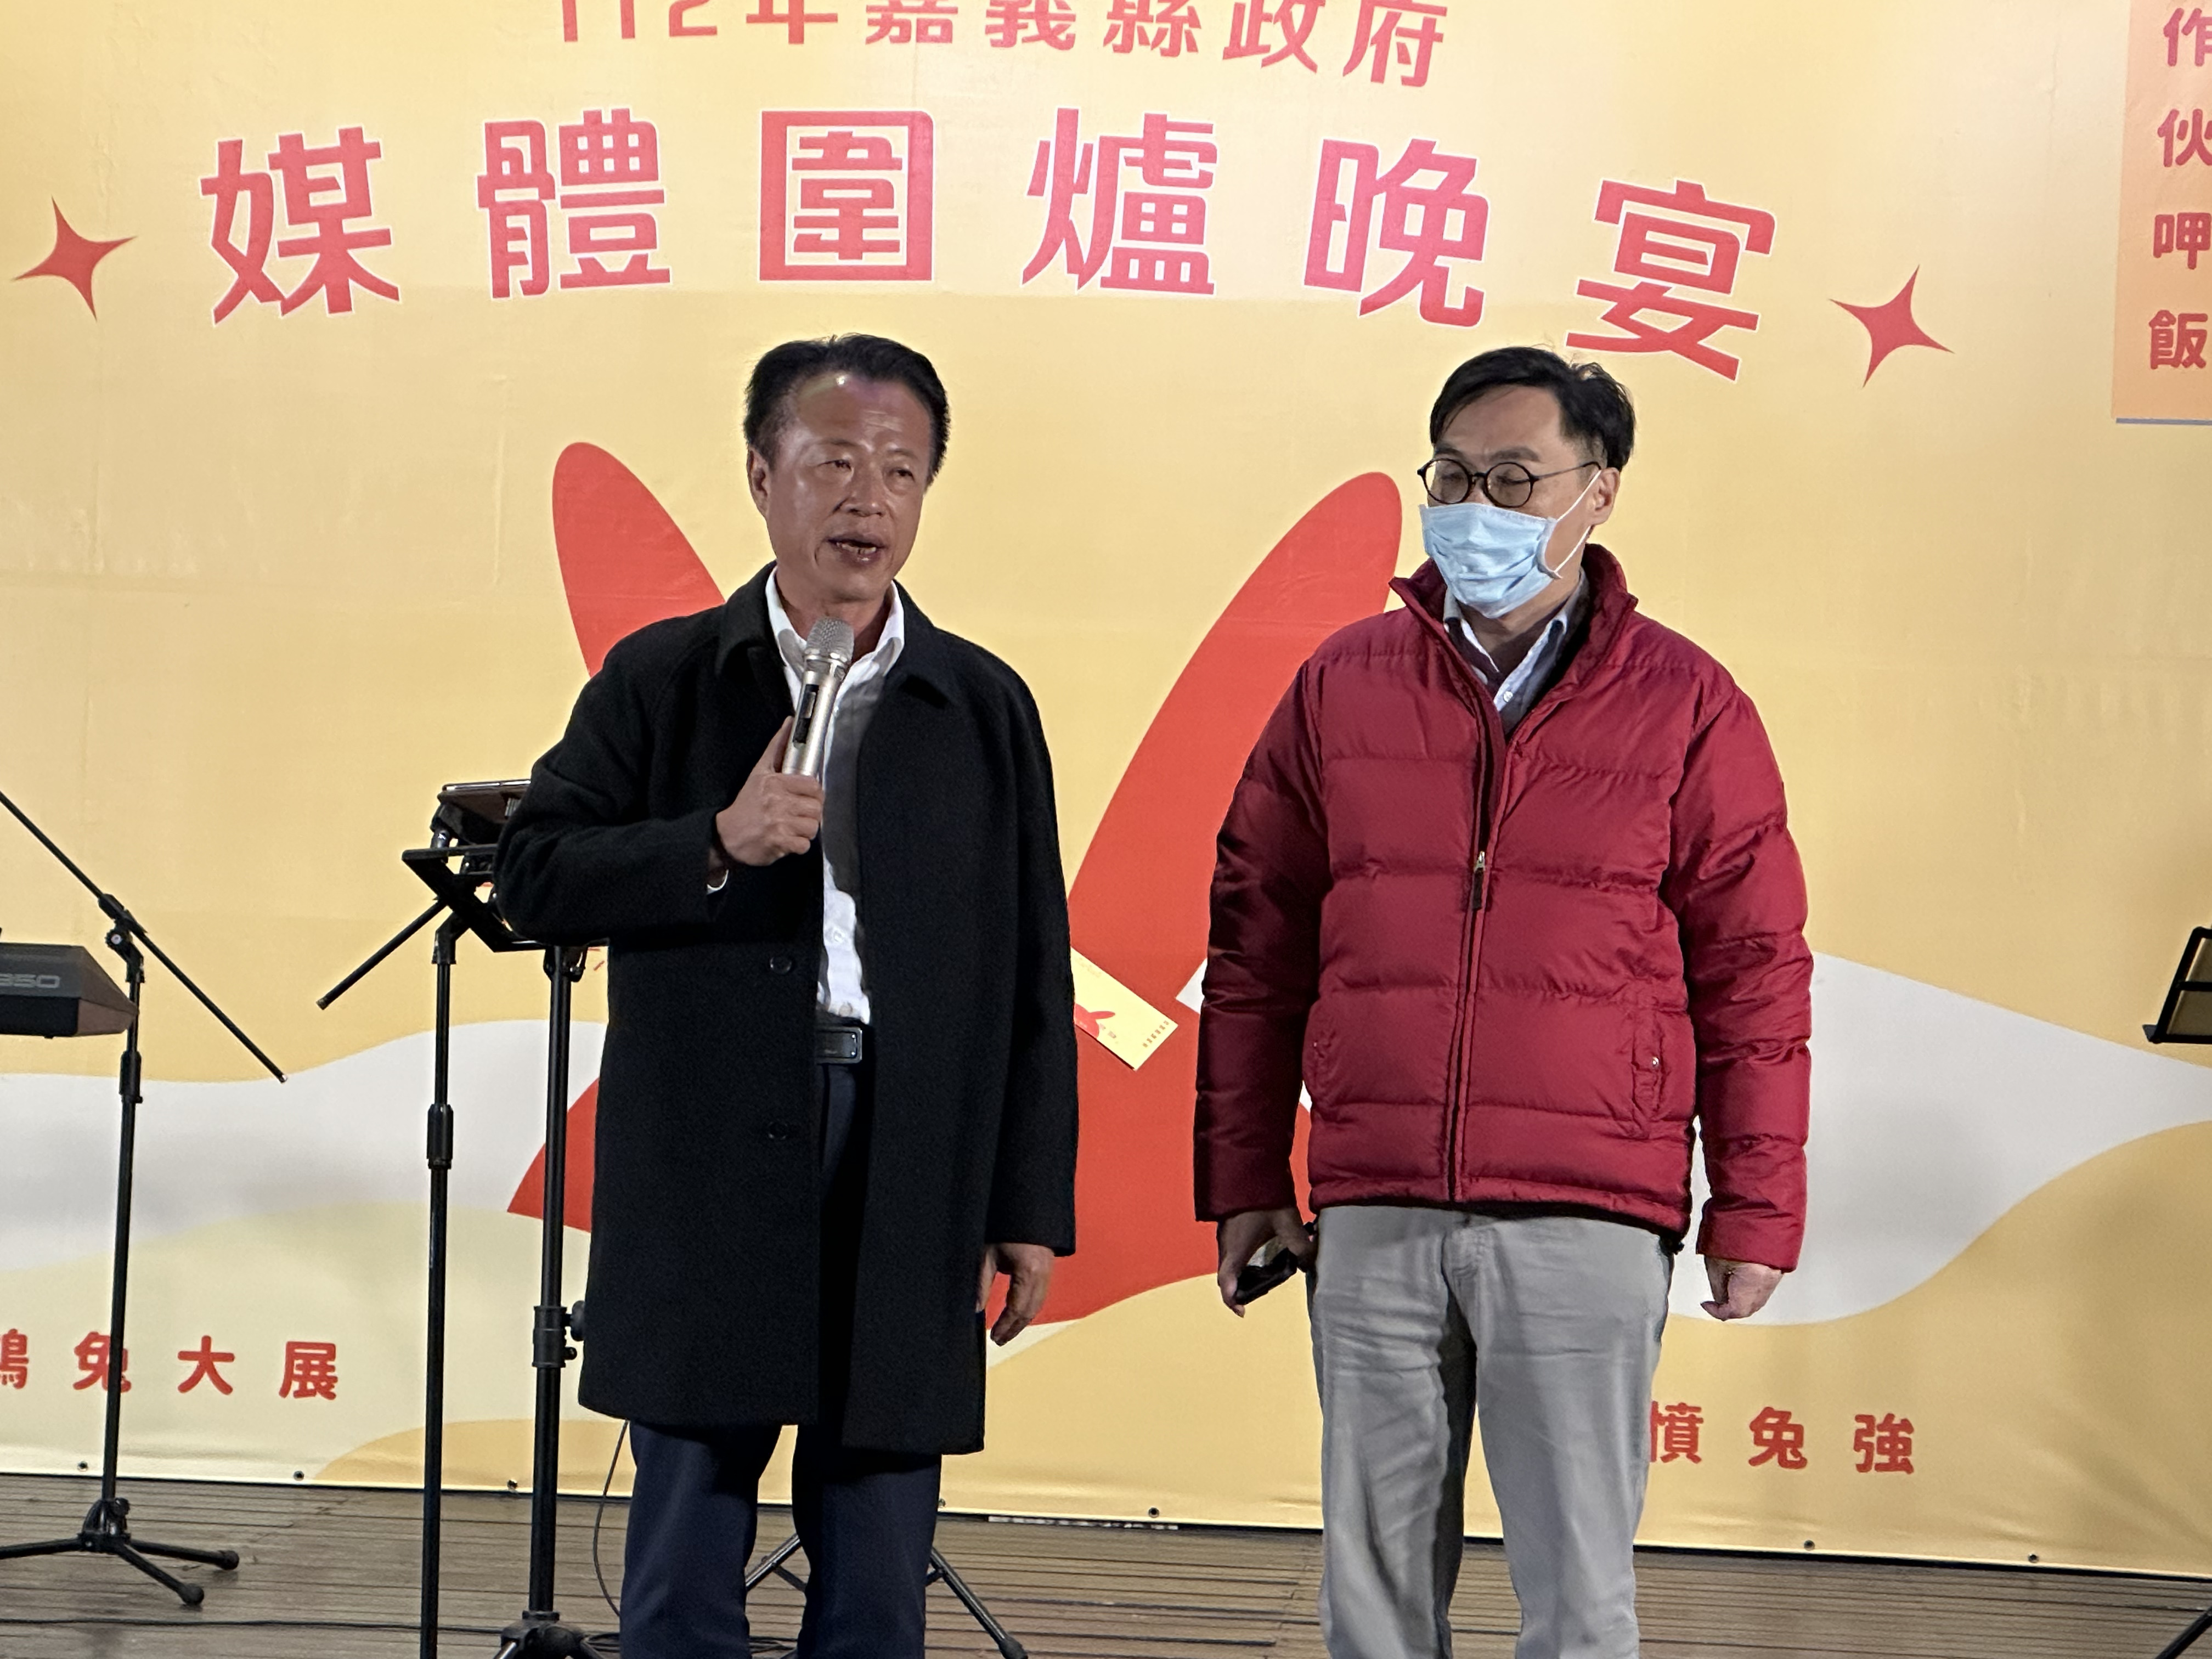 嘉义县长翁章梁（左）宣布新闻行销处长萧英成（右）请辞。记者鲁永明/摄影